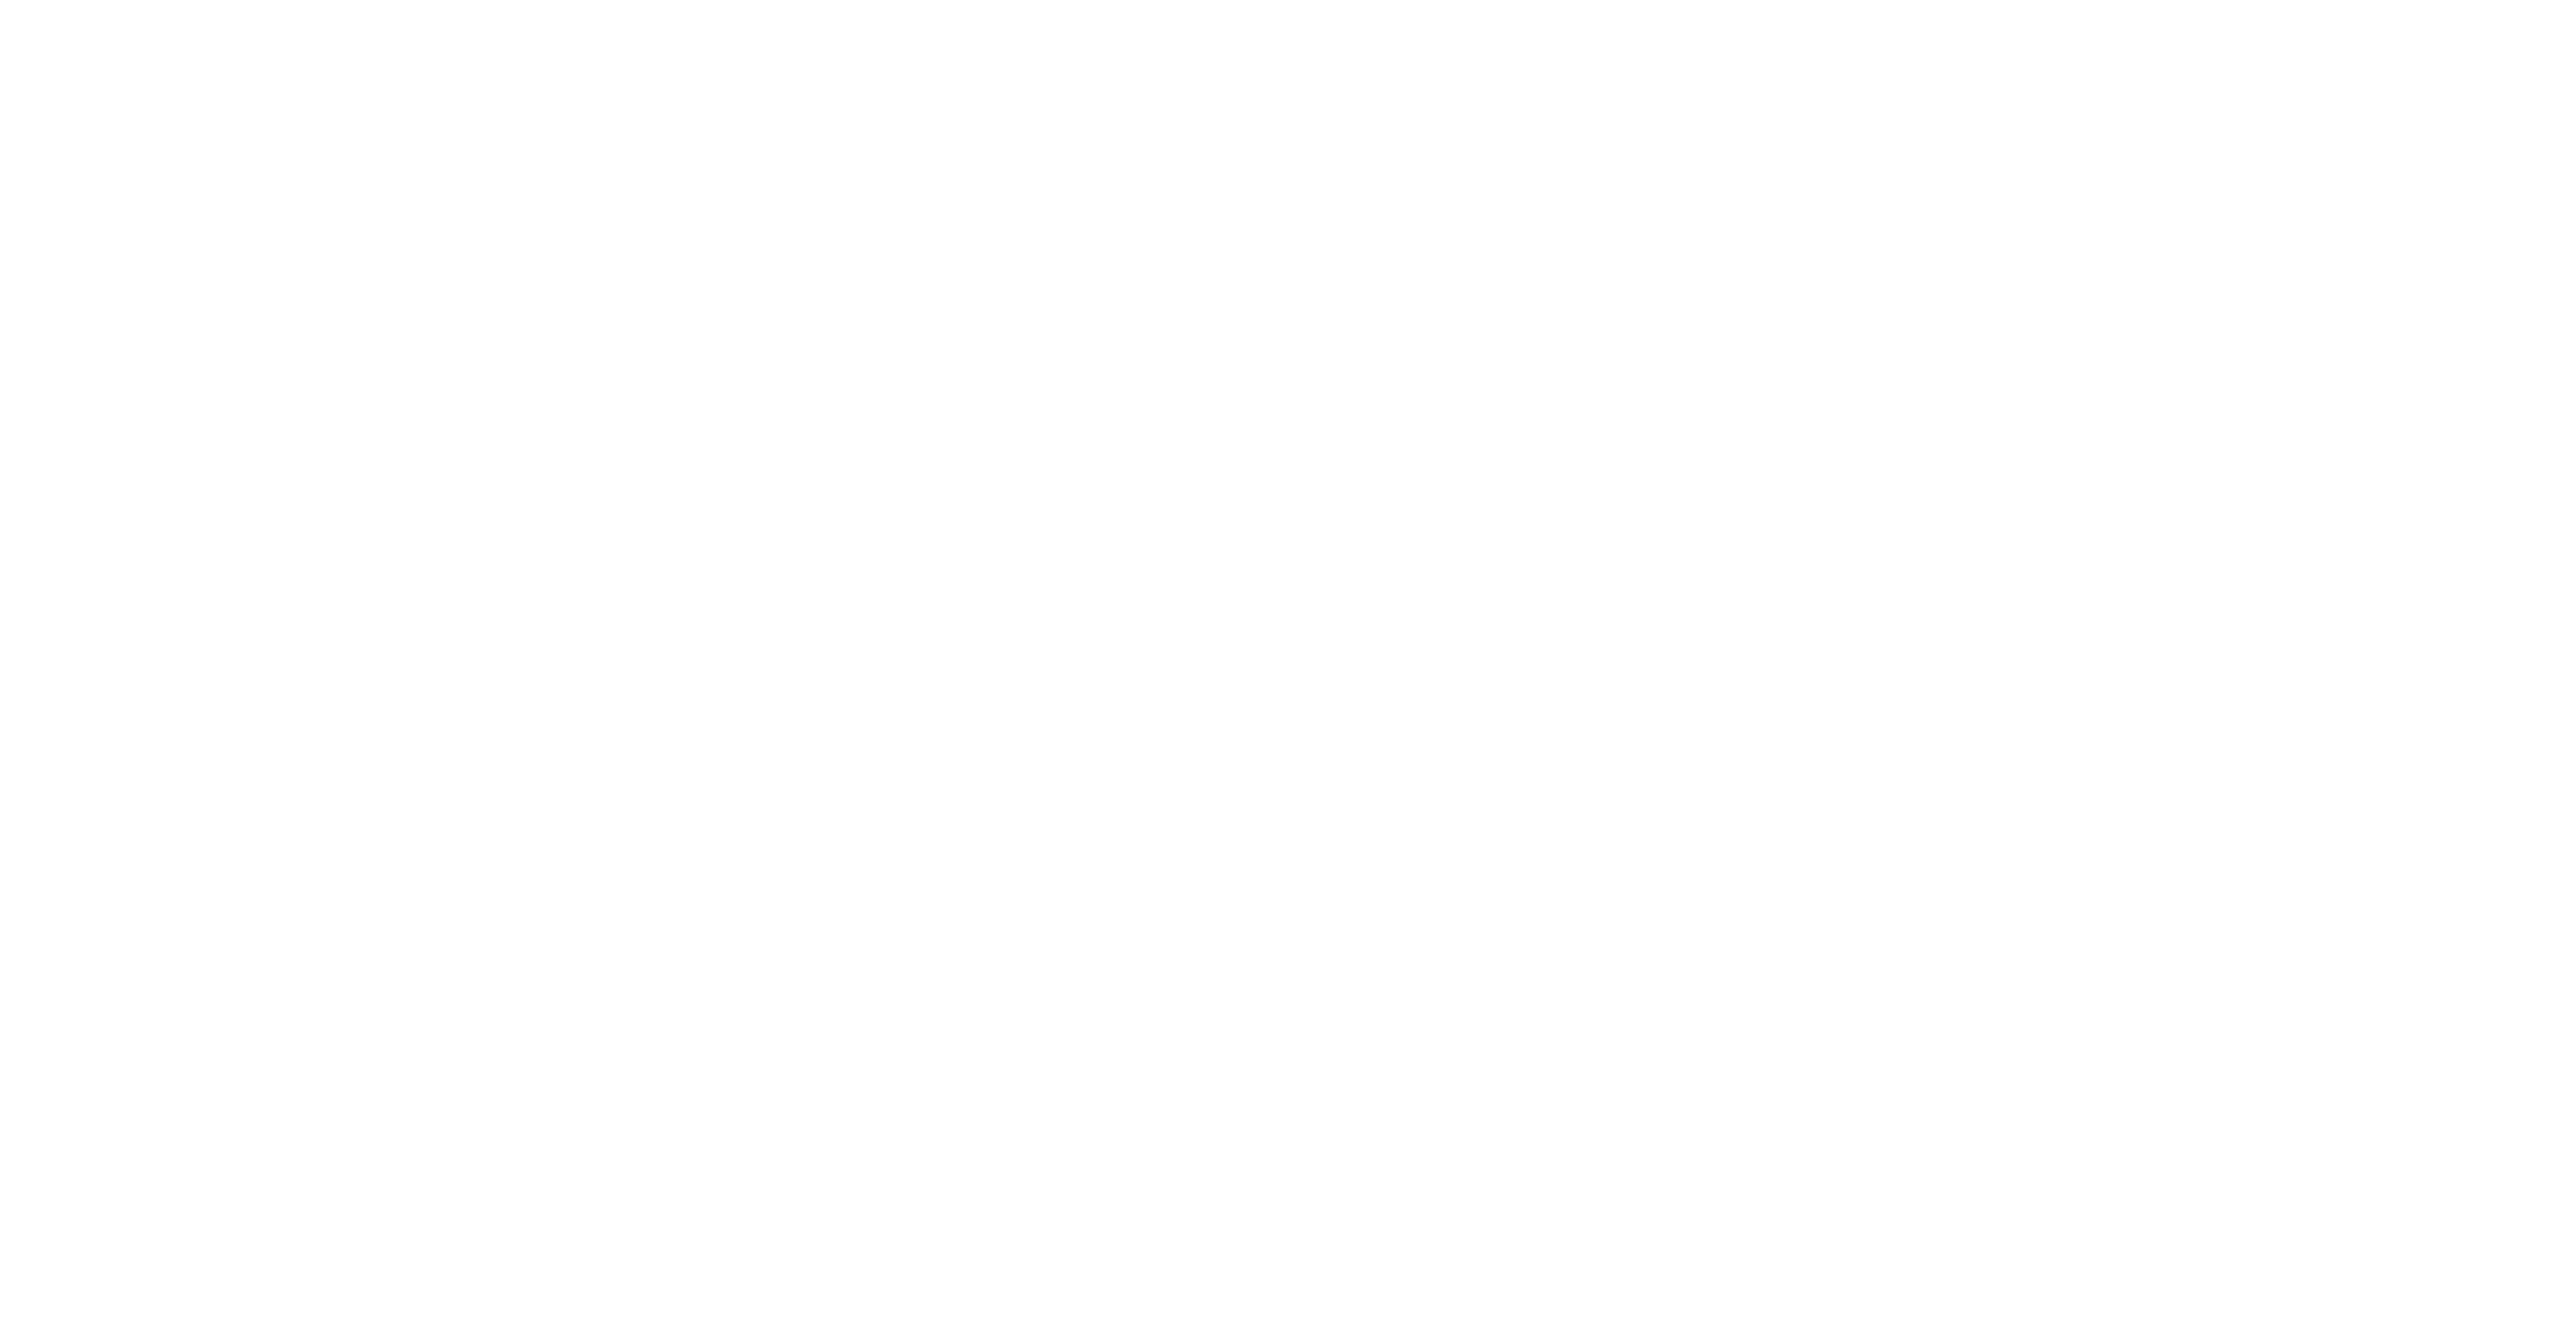 Zaynab Mohamed for Minnesota Senate